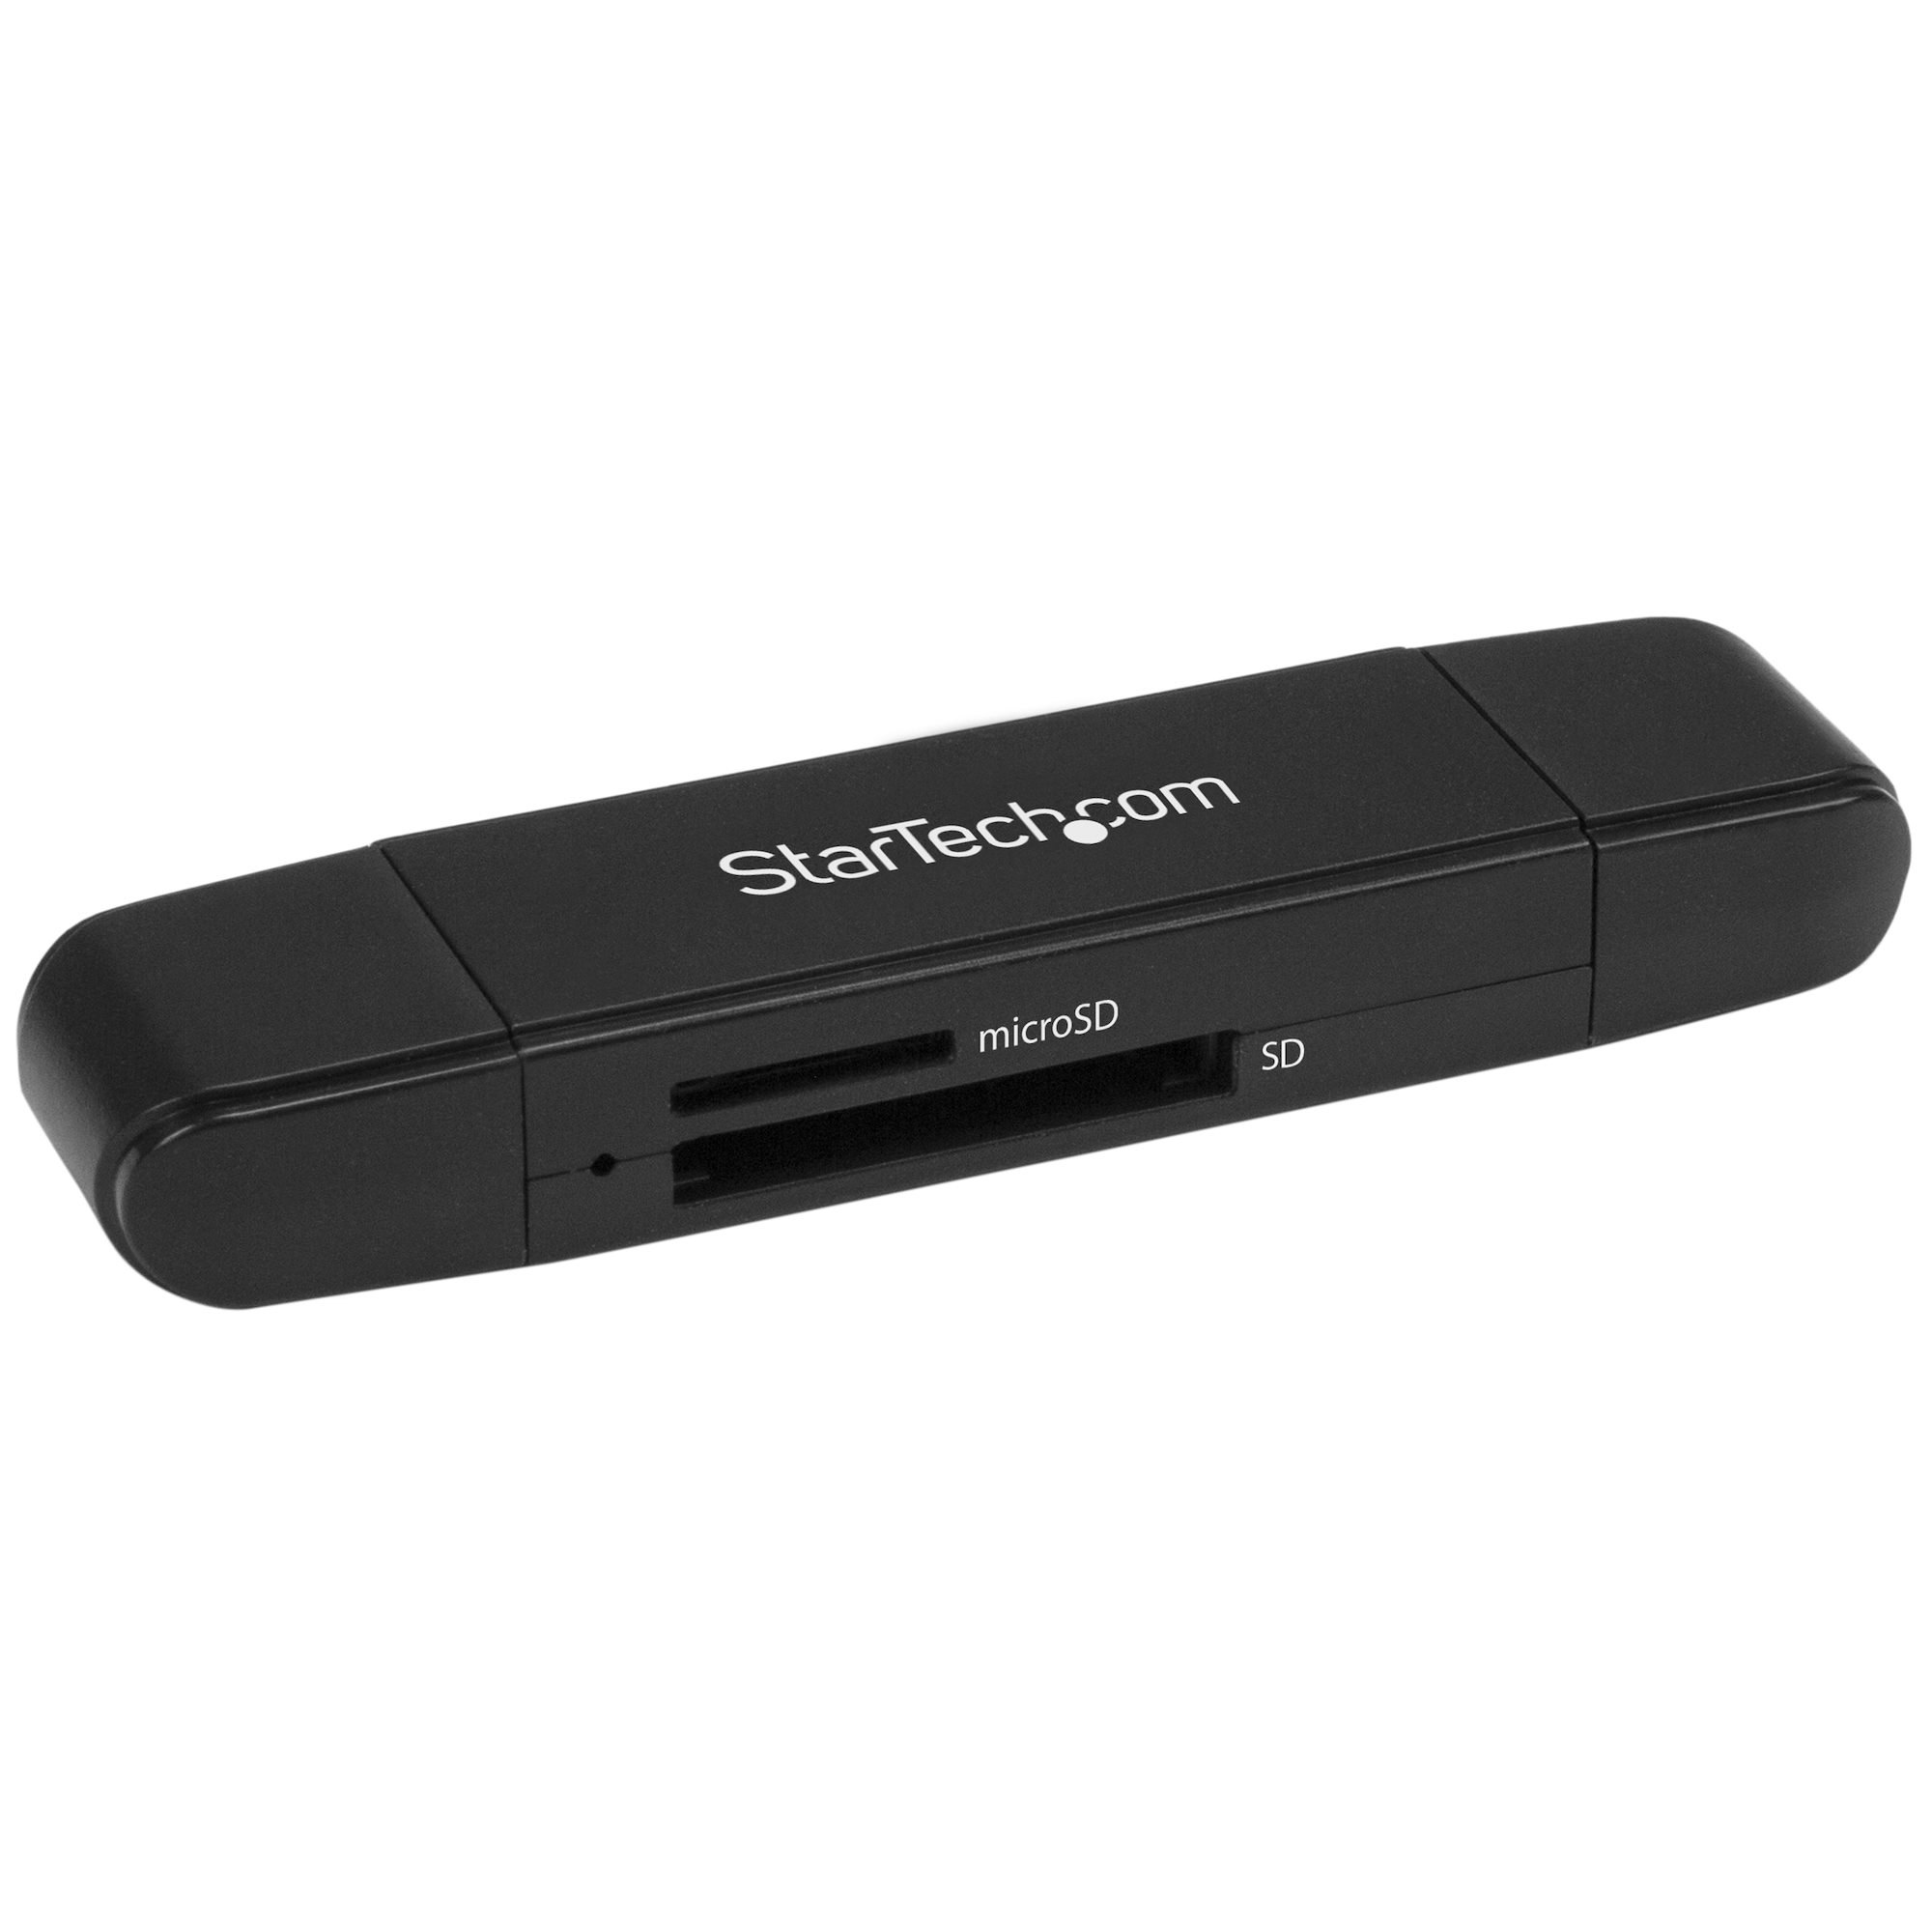 【SDMSDRWU3AC】USB 3.0 SD/MICROSD CARD READER